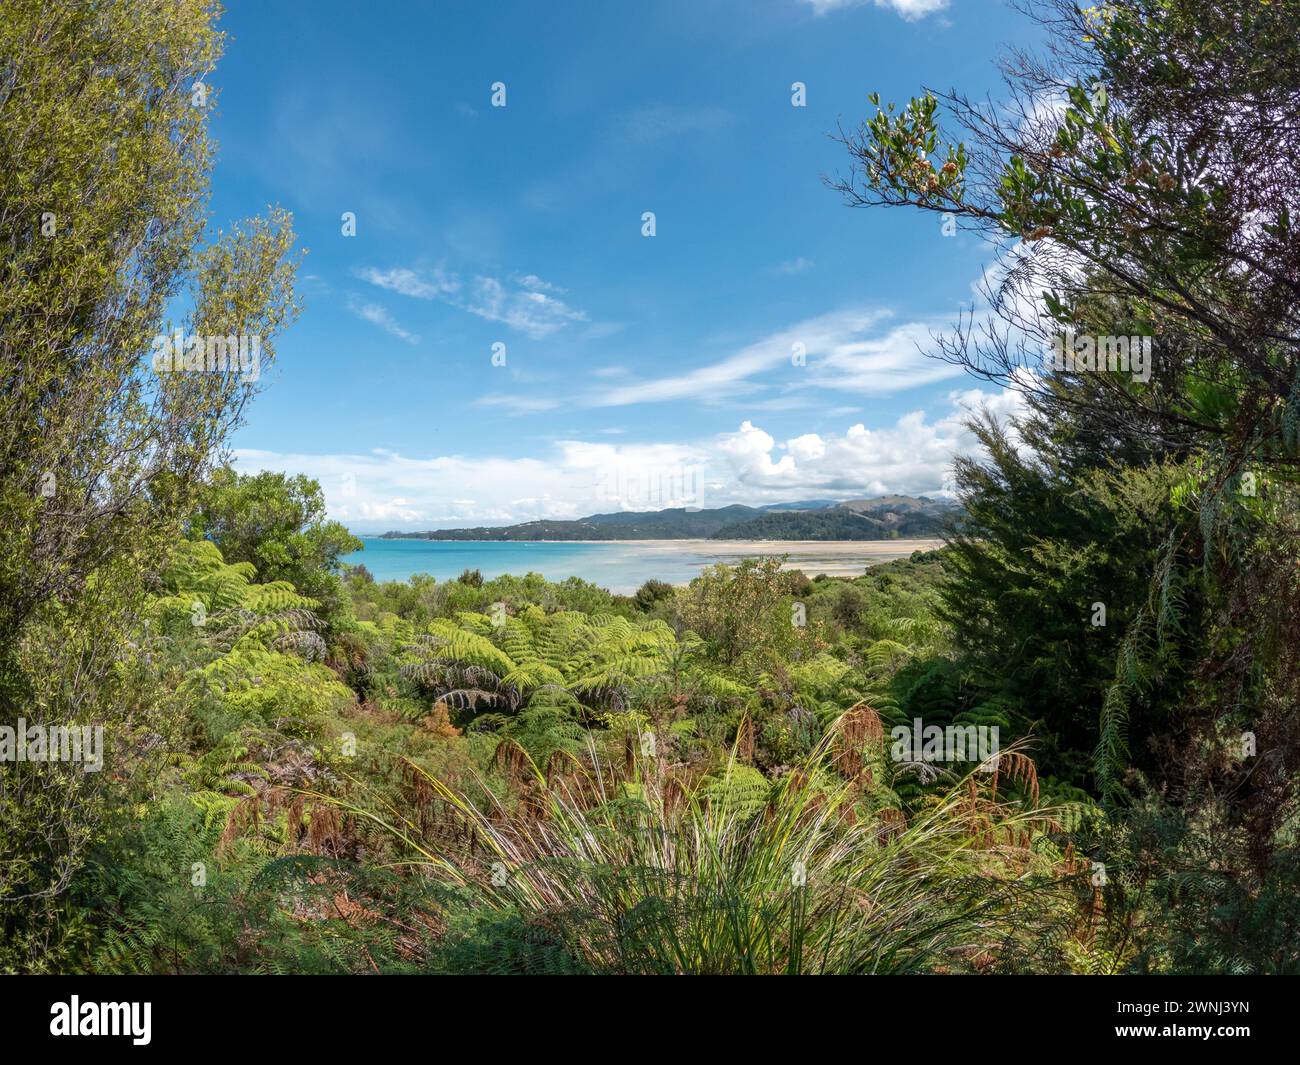 Parc national d'Abel Tasman magnifique paysage côtier avec plages dorées, eaux cristallines et Bush indigène luxuriant Banque D'Images